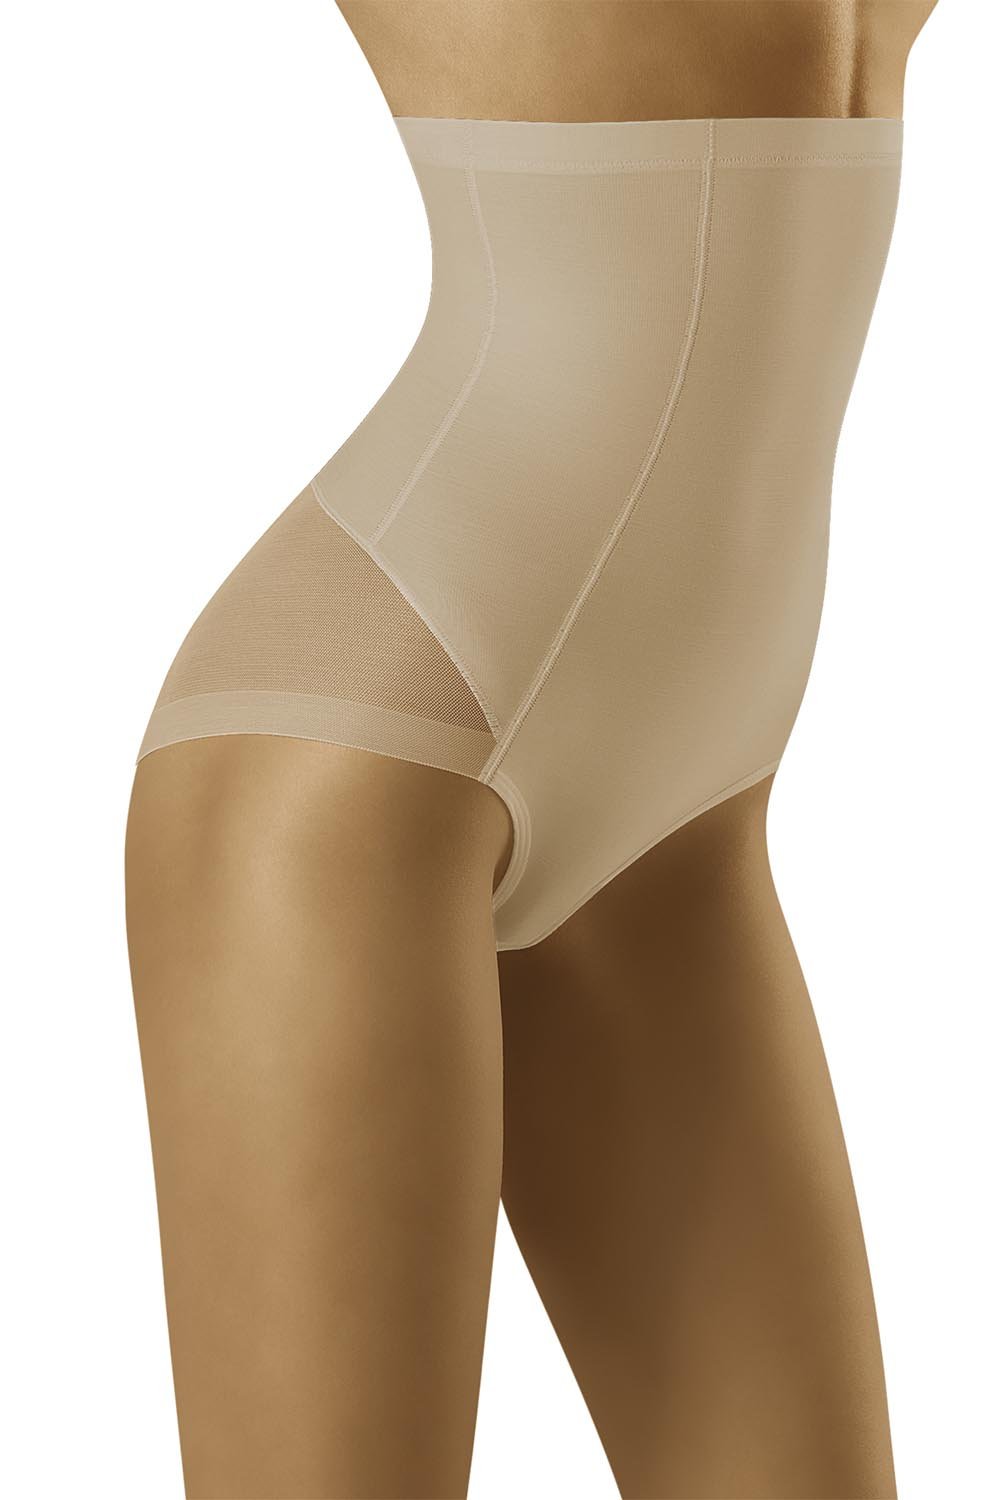 Panties model 156218 Wolbar beige Ladies